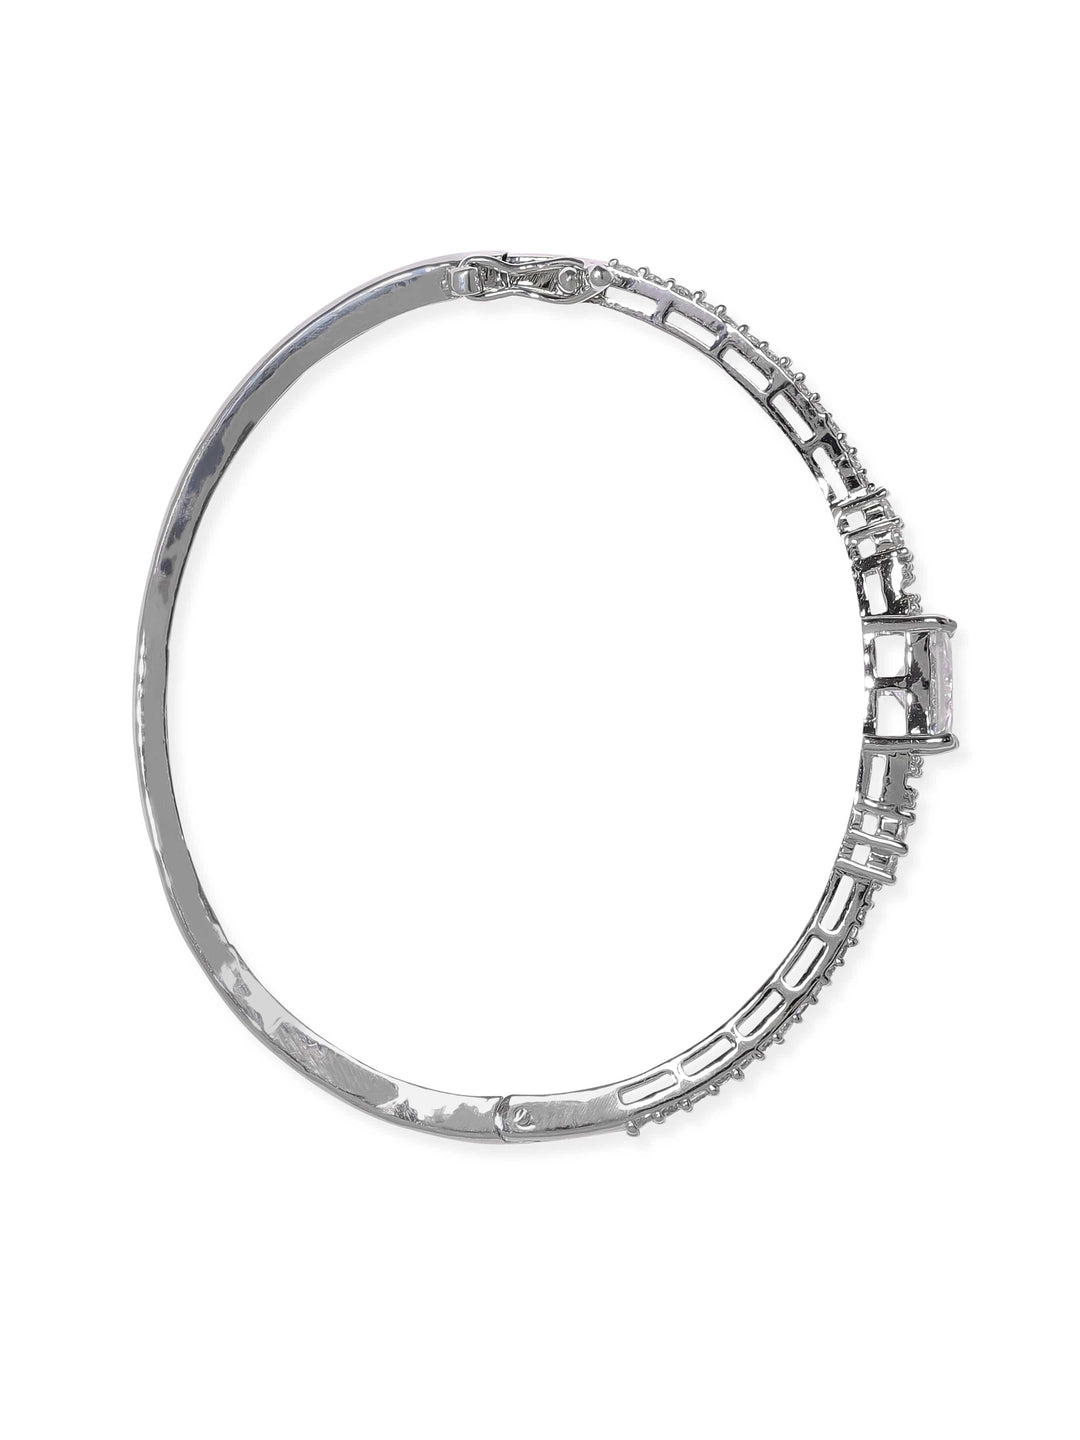 Rubans Rhodium plated zirconia studded Sleek Band Bracelet Bangles & Bracelets